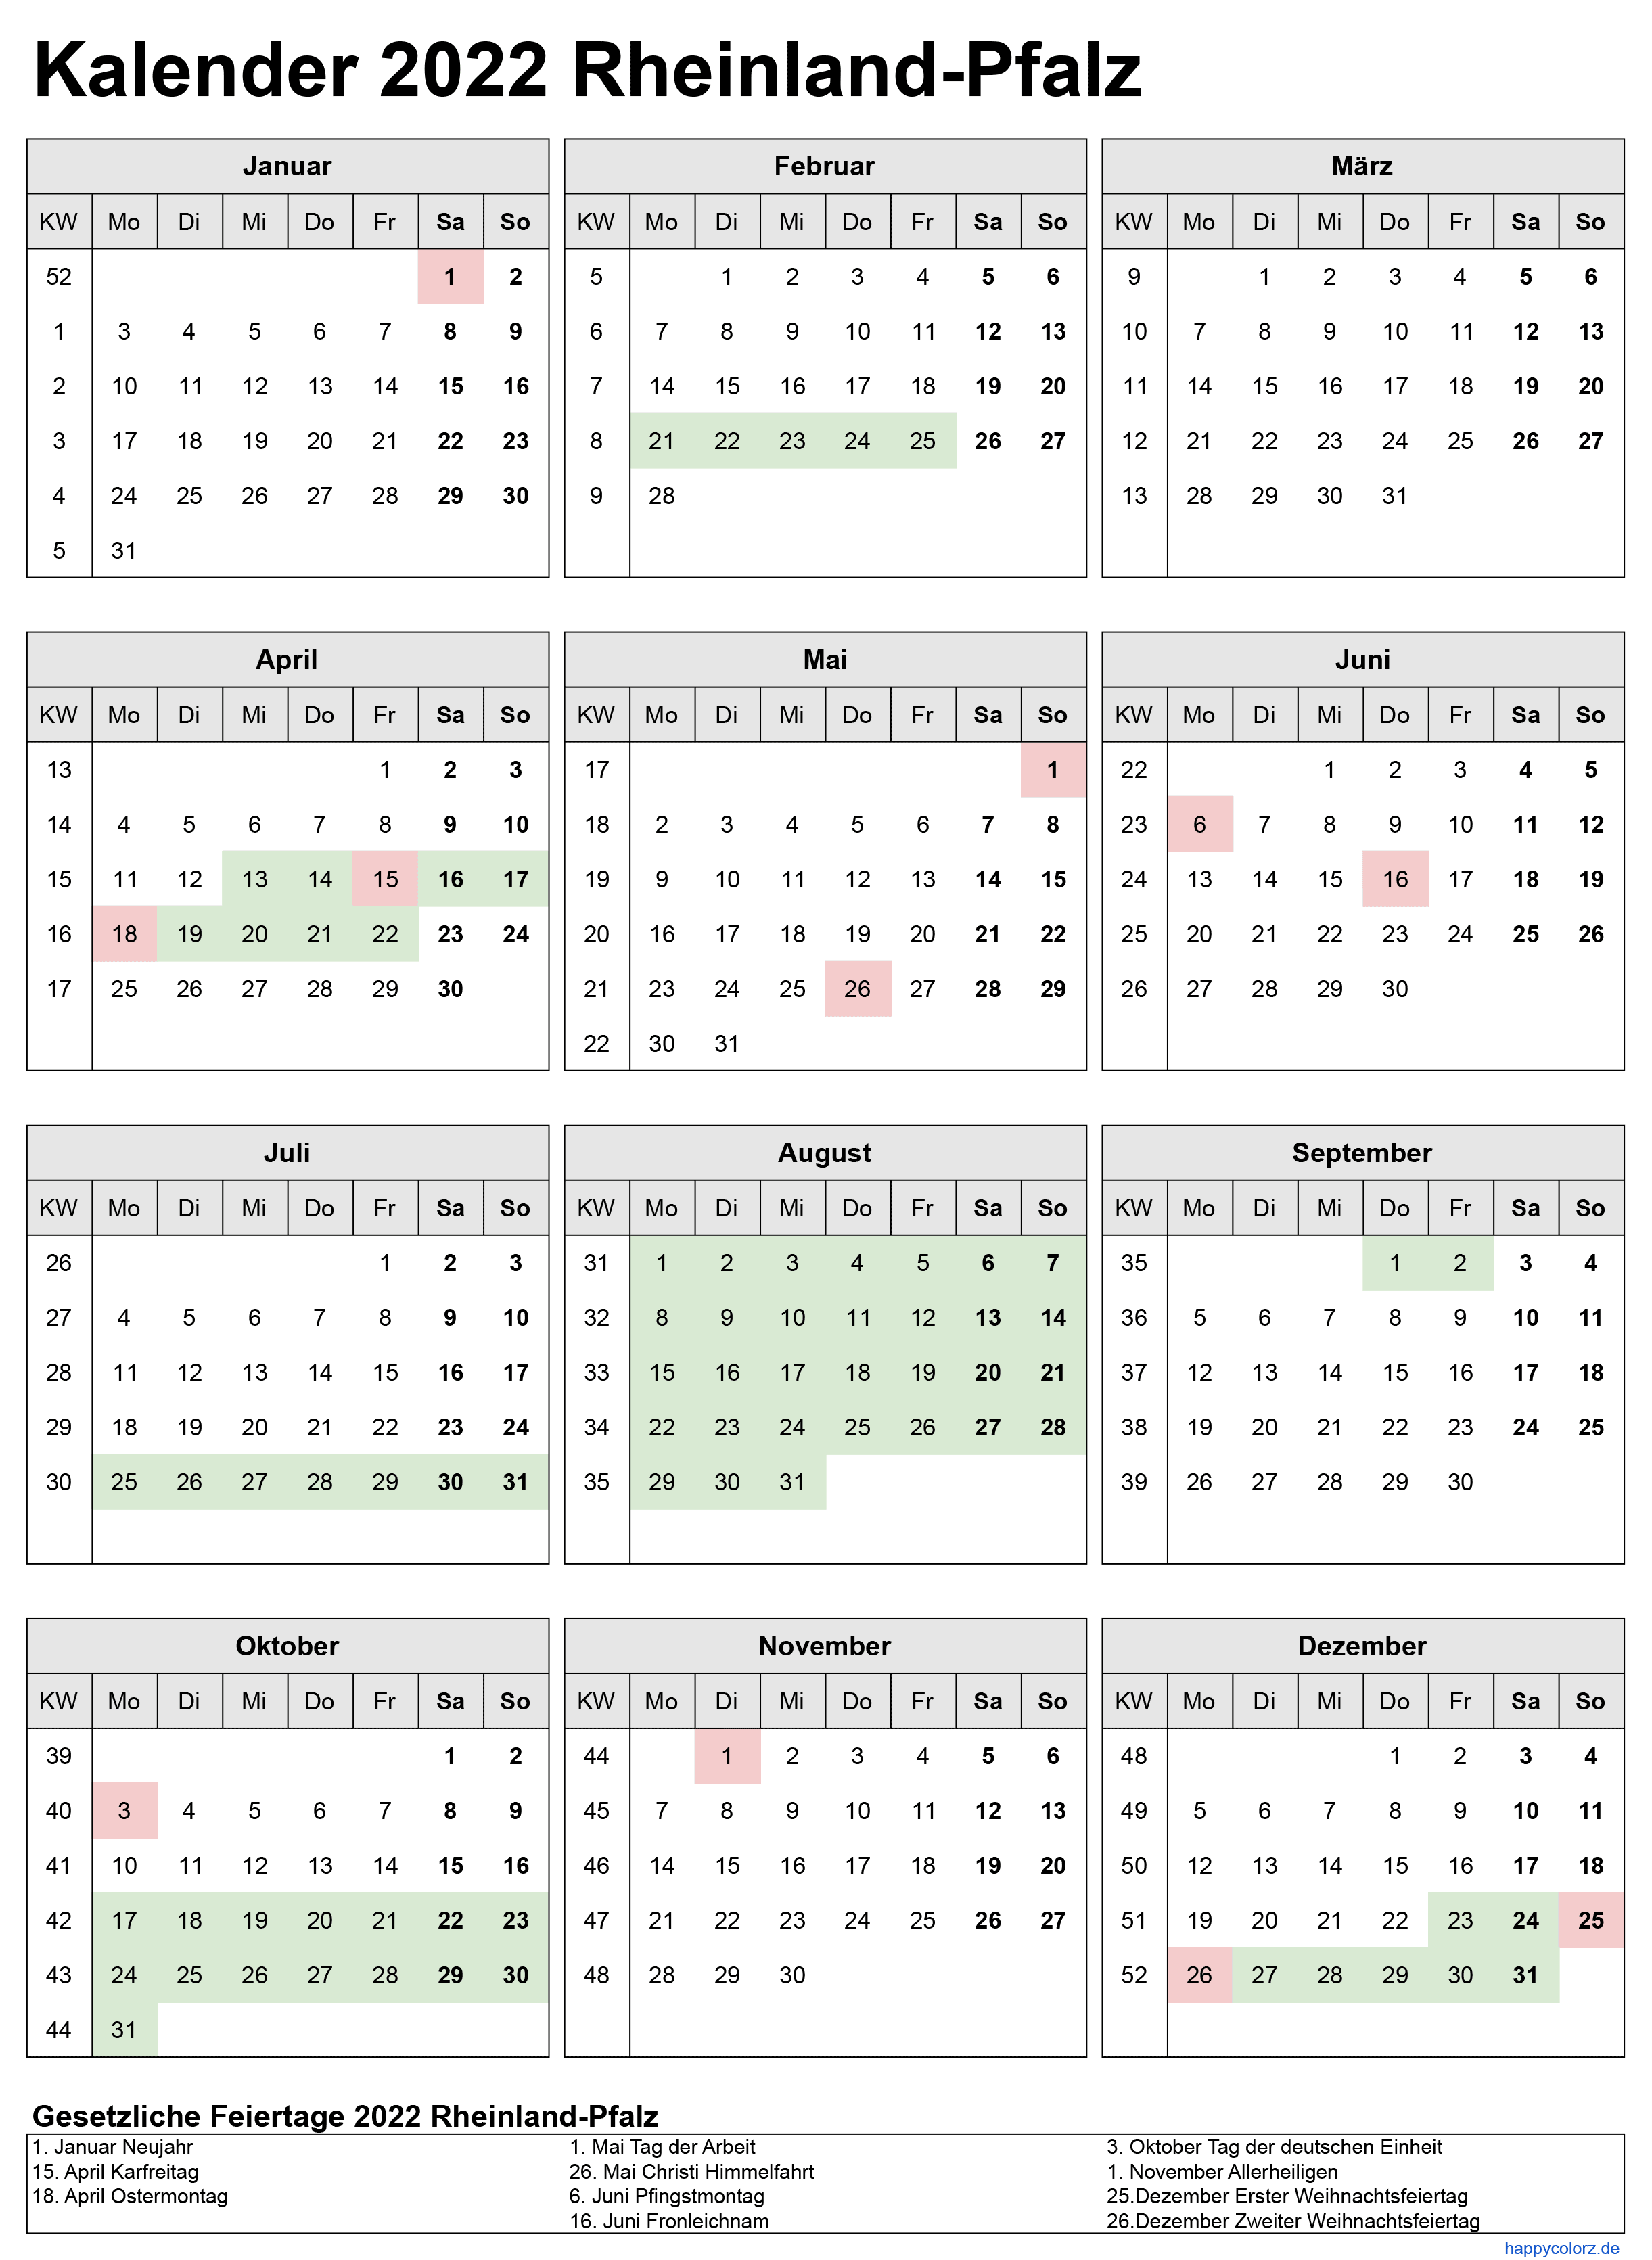 Kalender 2022 Rheinland-Pfalz zum Ausdrucken